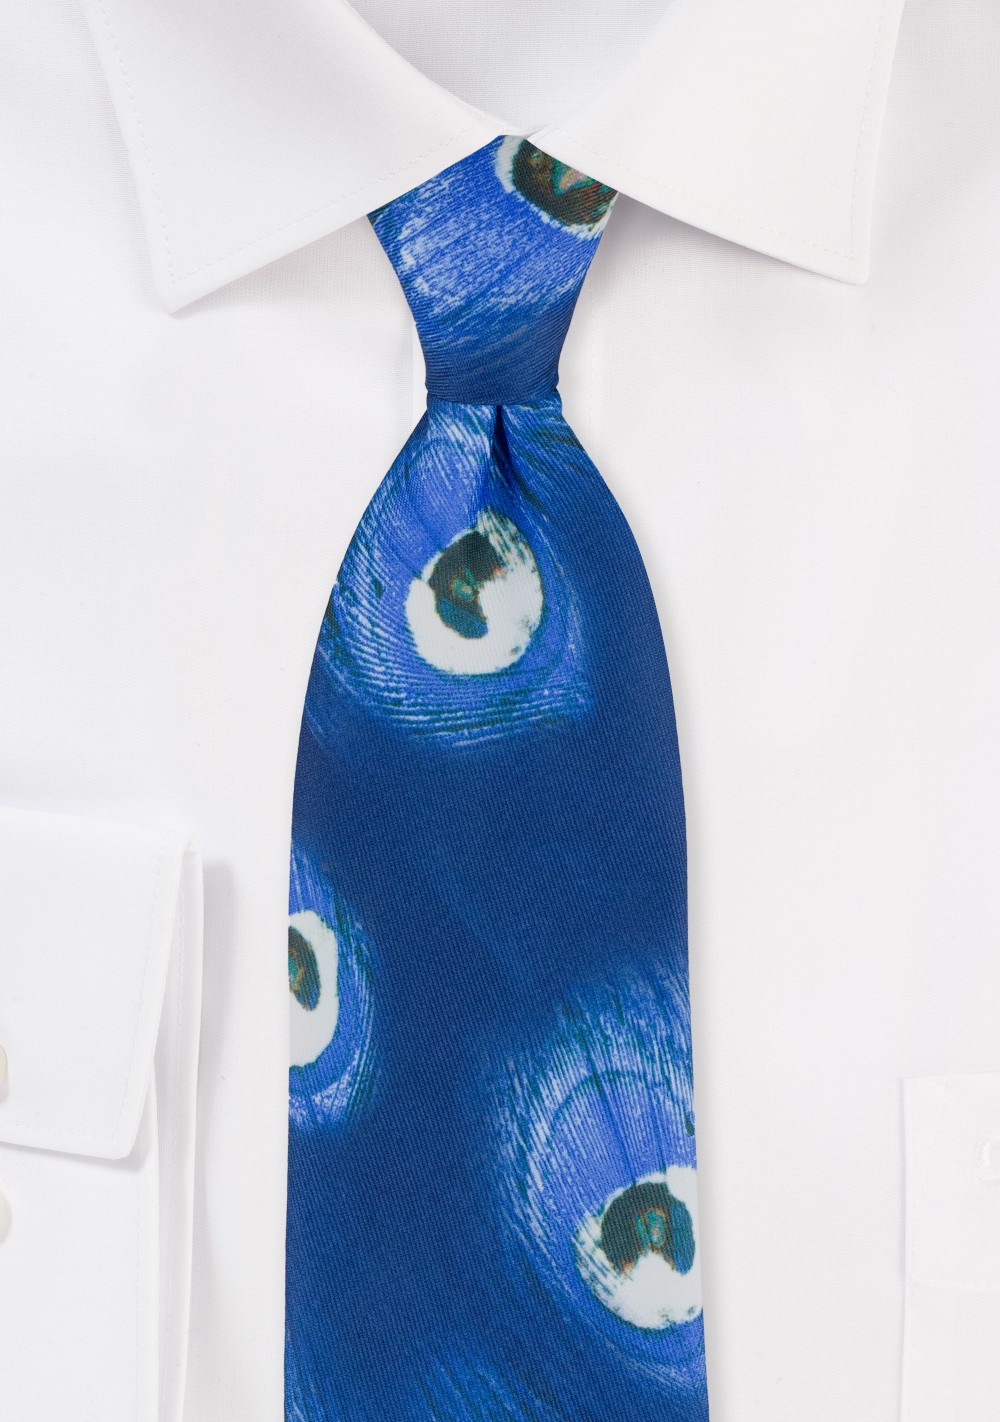 Peacock Print Tie in Blues